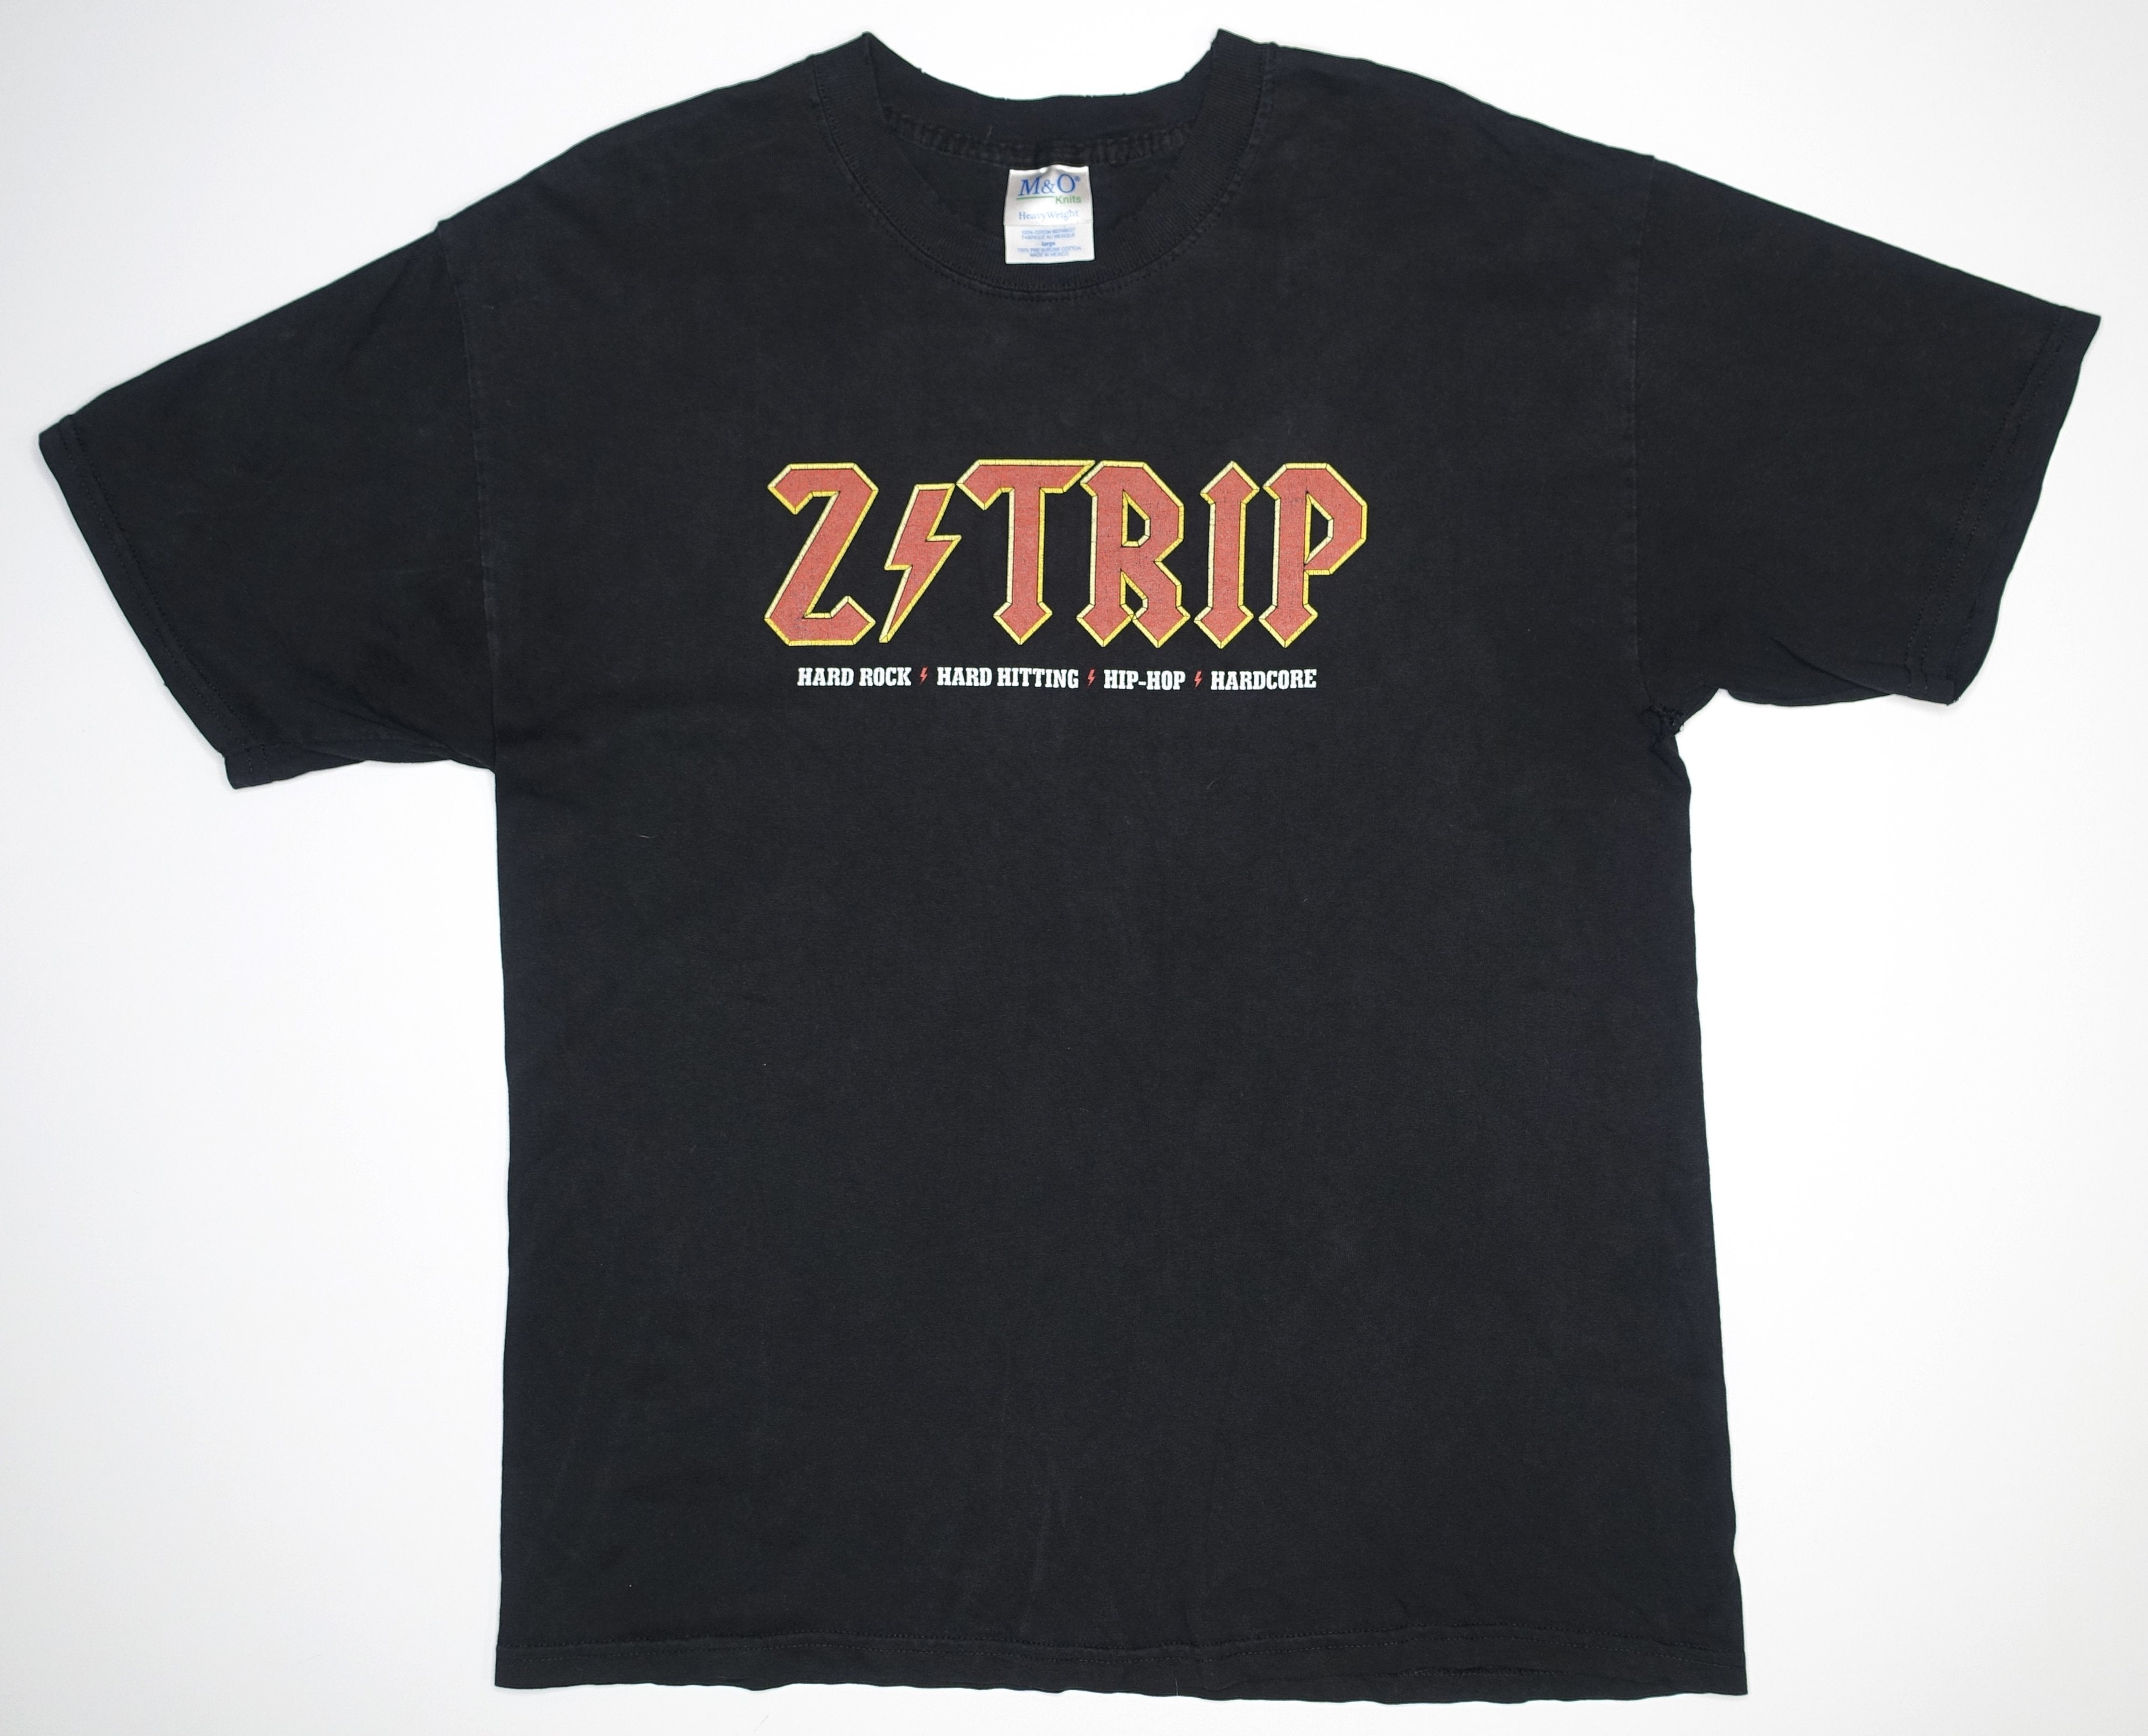 Z-Trip – Hard Rock, Hard Hitting, Hip-Hop, Hardcore Tour Shirt Size Large